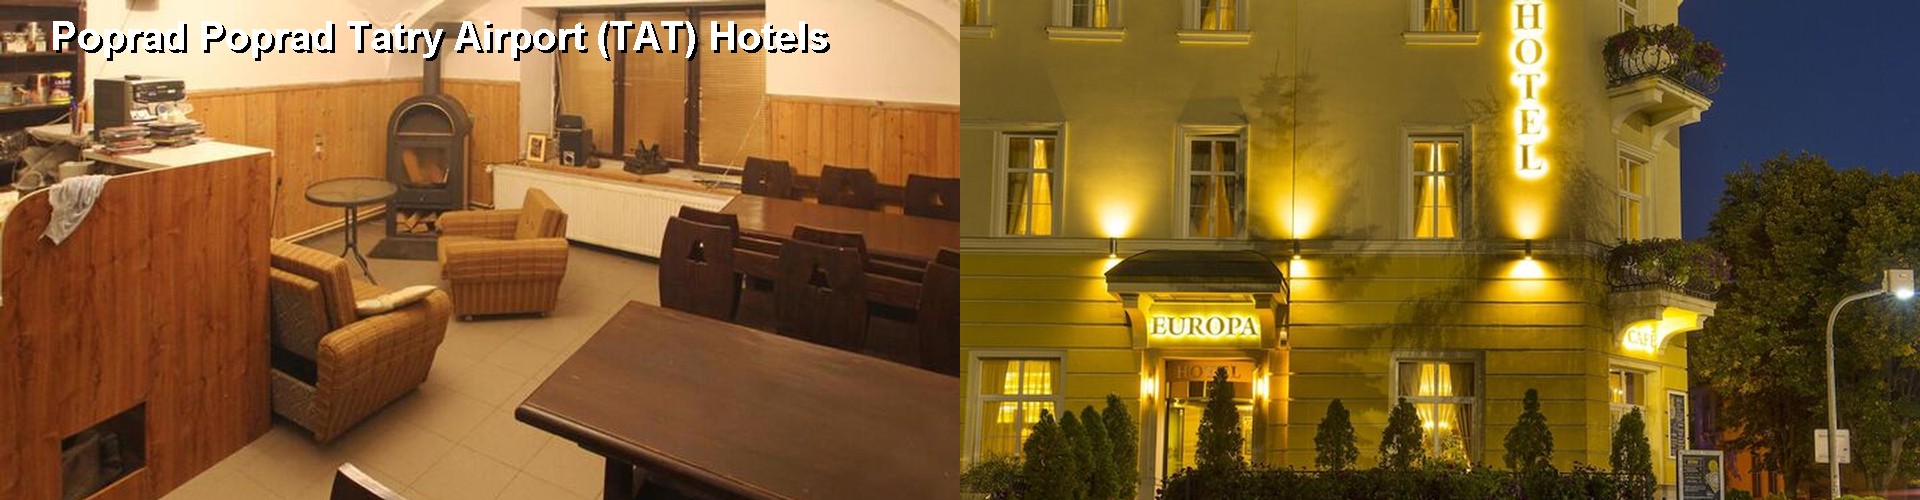 5 Best Hotels near Poprad Poprad Tatry Airport (TAT)